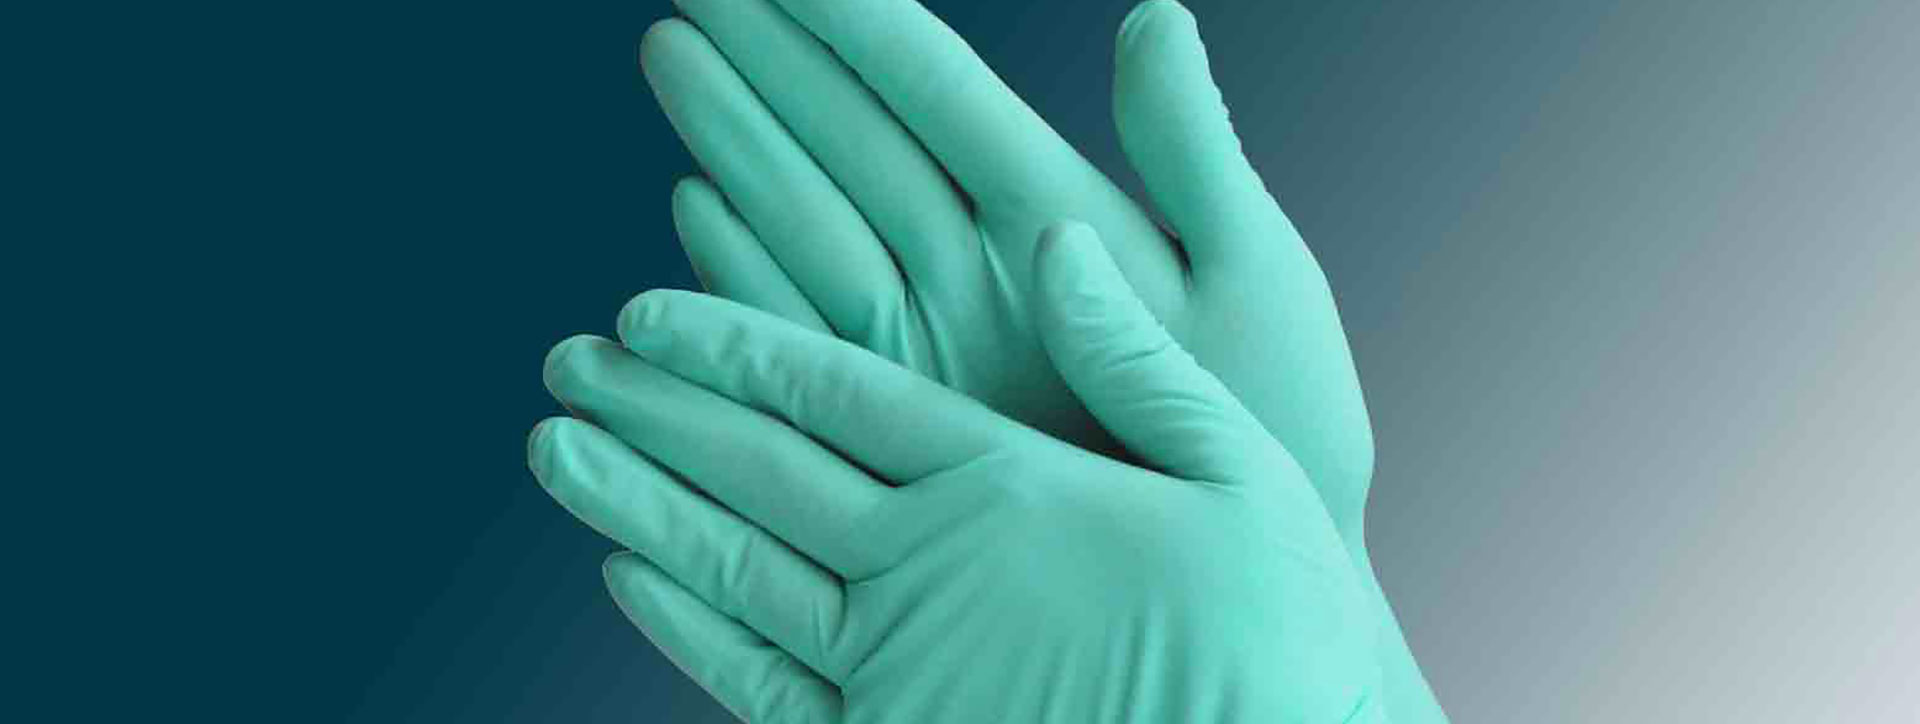 Especificación estándar ASTM D6977-19 para guantes de examen de policloropreno para aplicaciones médicas